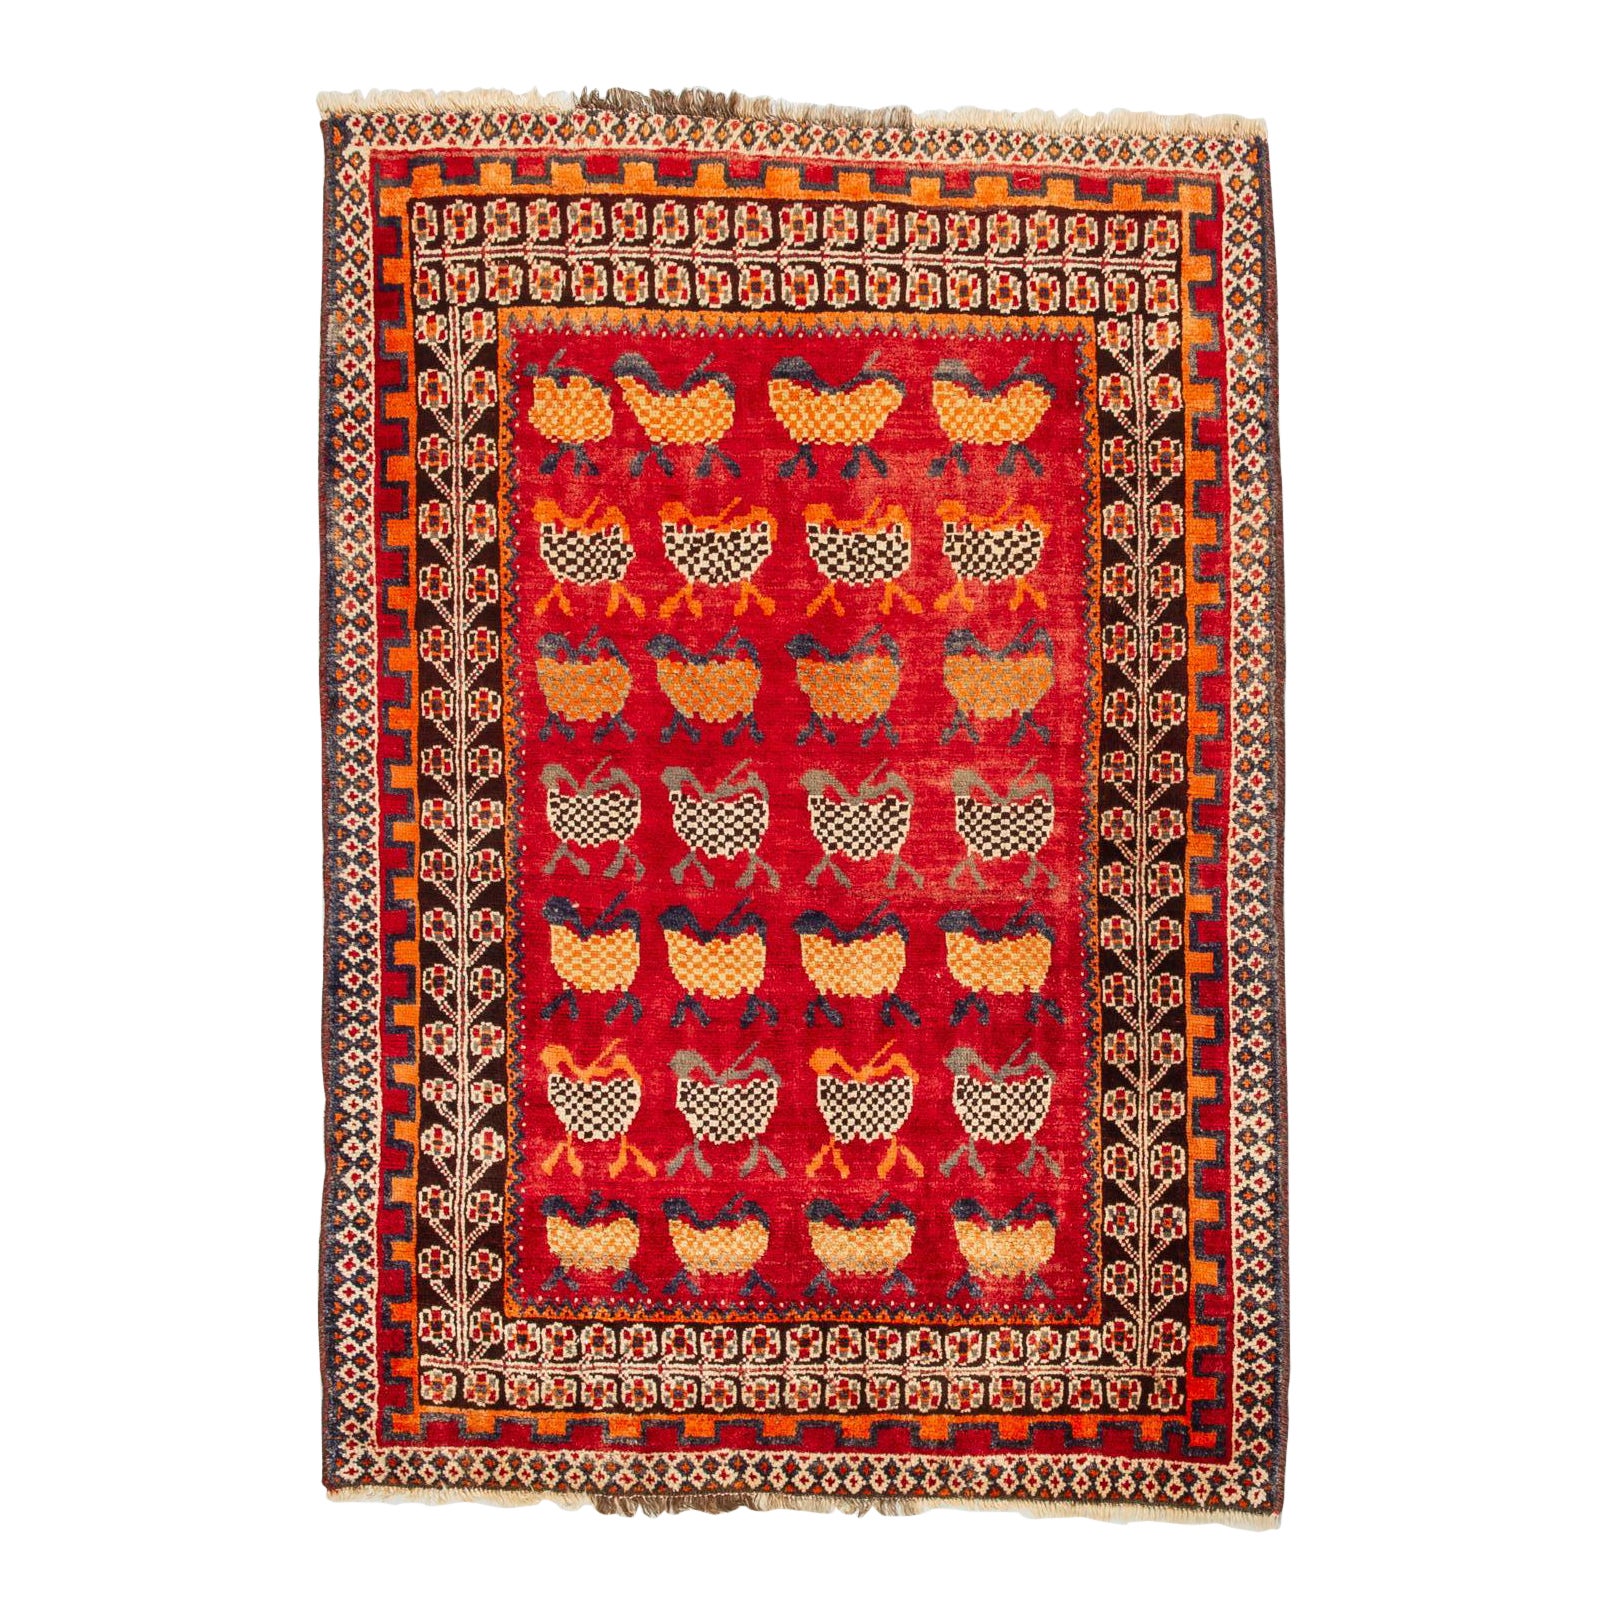 Nomadic Kurdestan Carpet or Rug For Sale